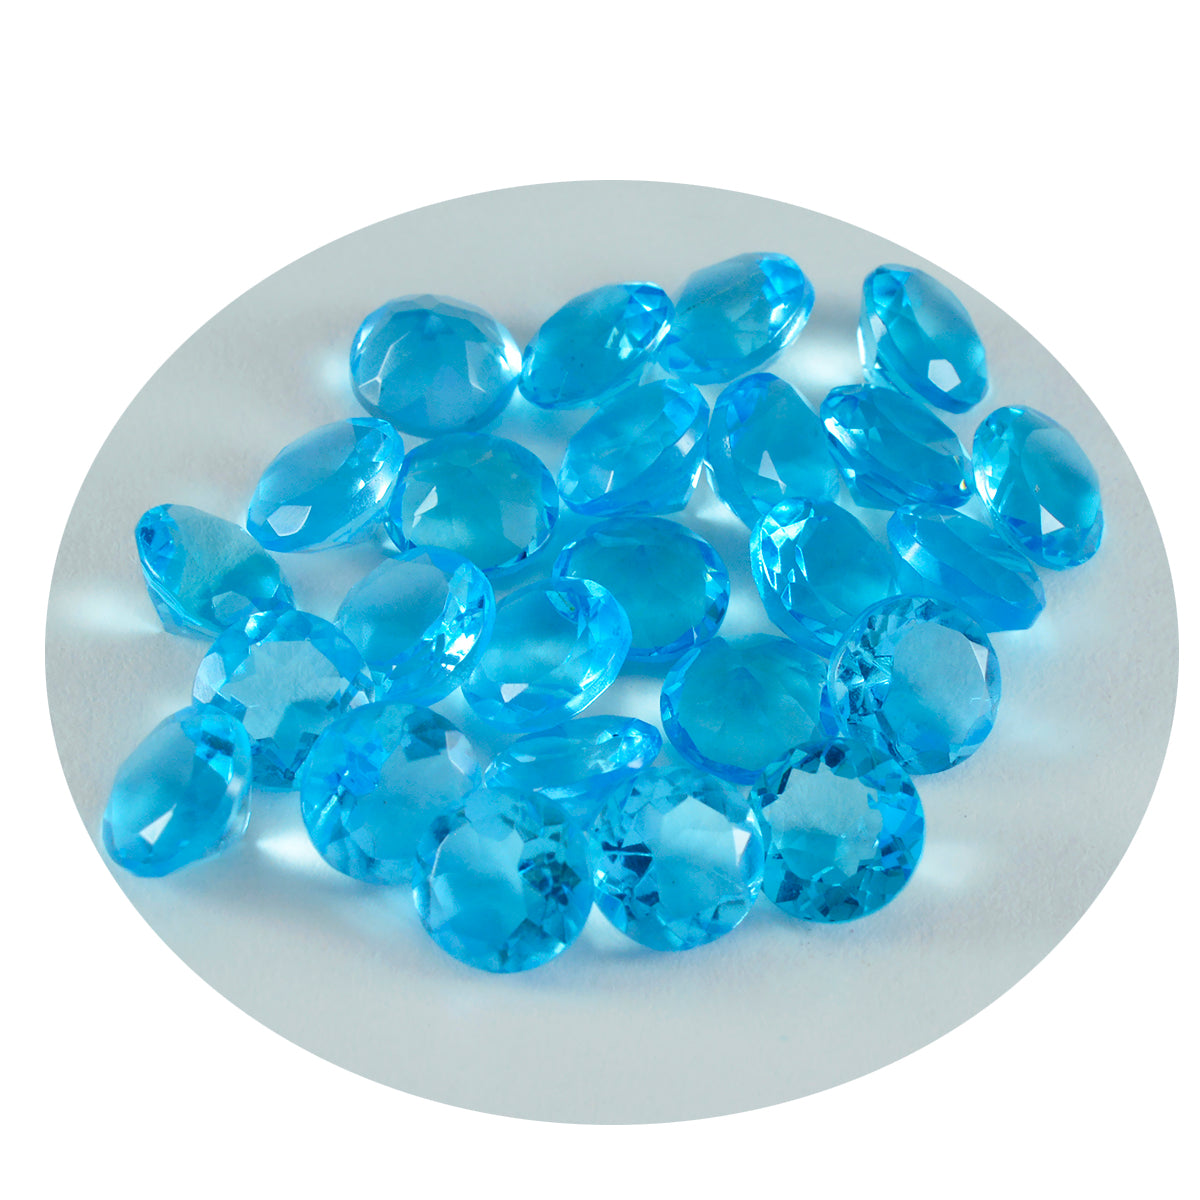 riyogems 1 шт. синий топаз cz ограненный 6x6 мм круглая форма красивые качественные свободные драгоценные камни